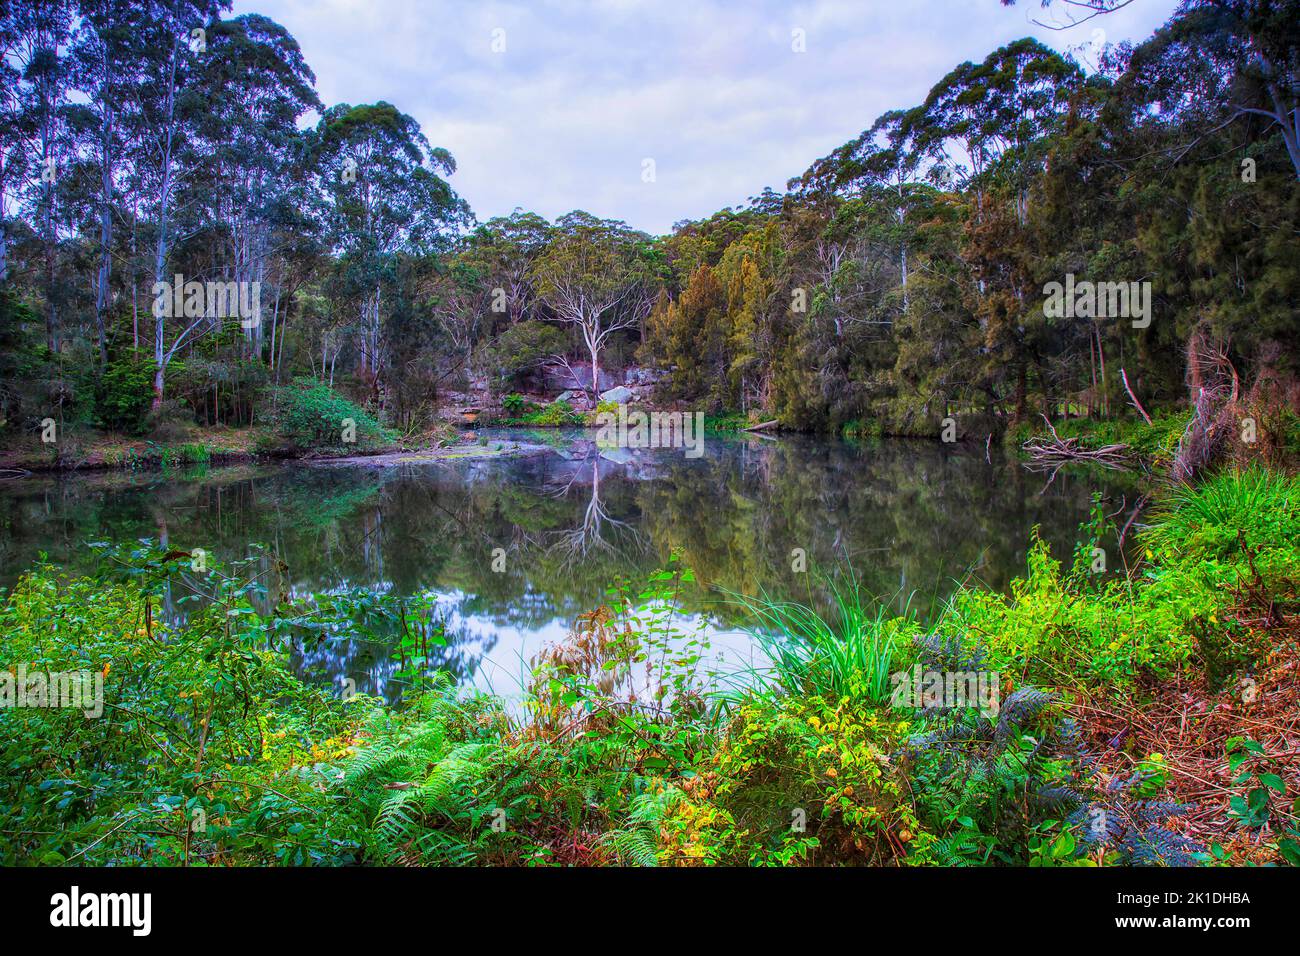 Pintoresco río en la cala de Lane en el parque nacional de Sydney, Australia - exuberante vegetación. Foto de stock